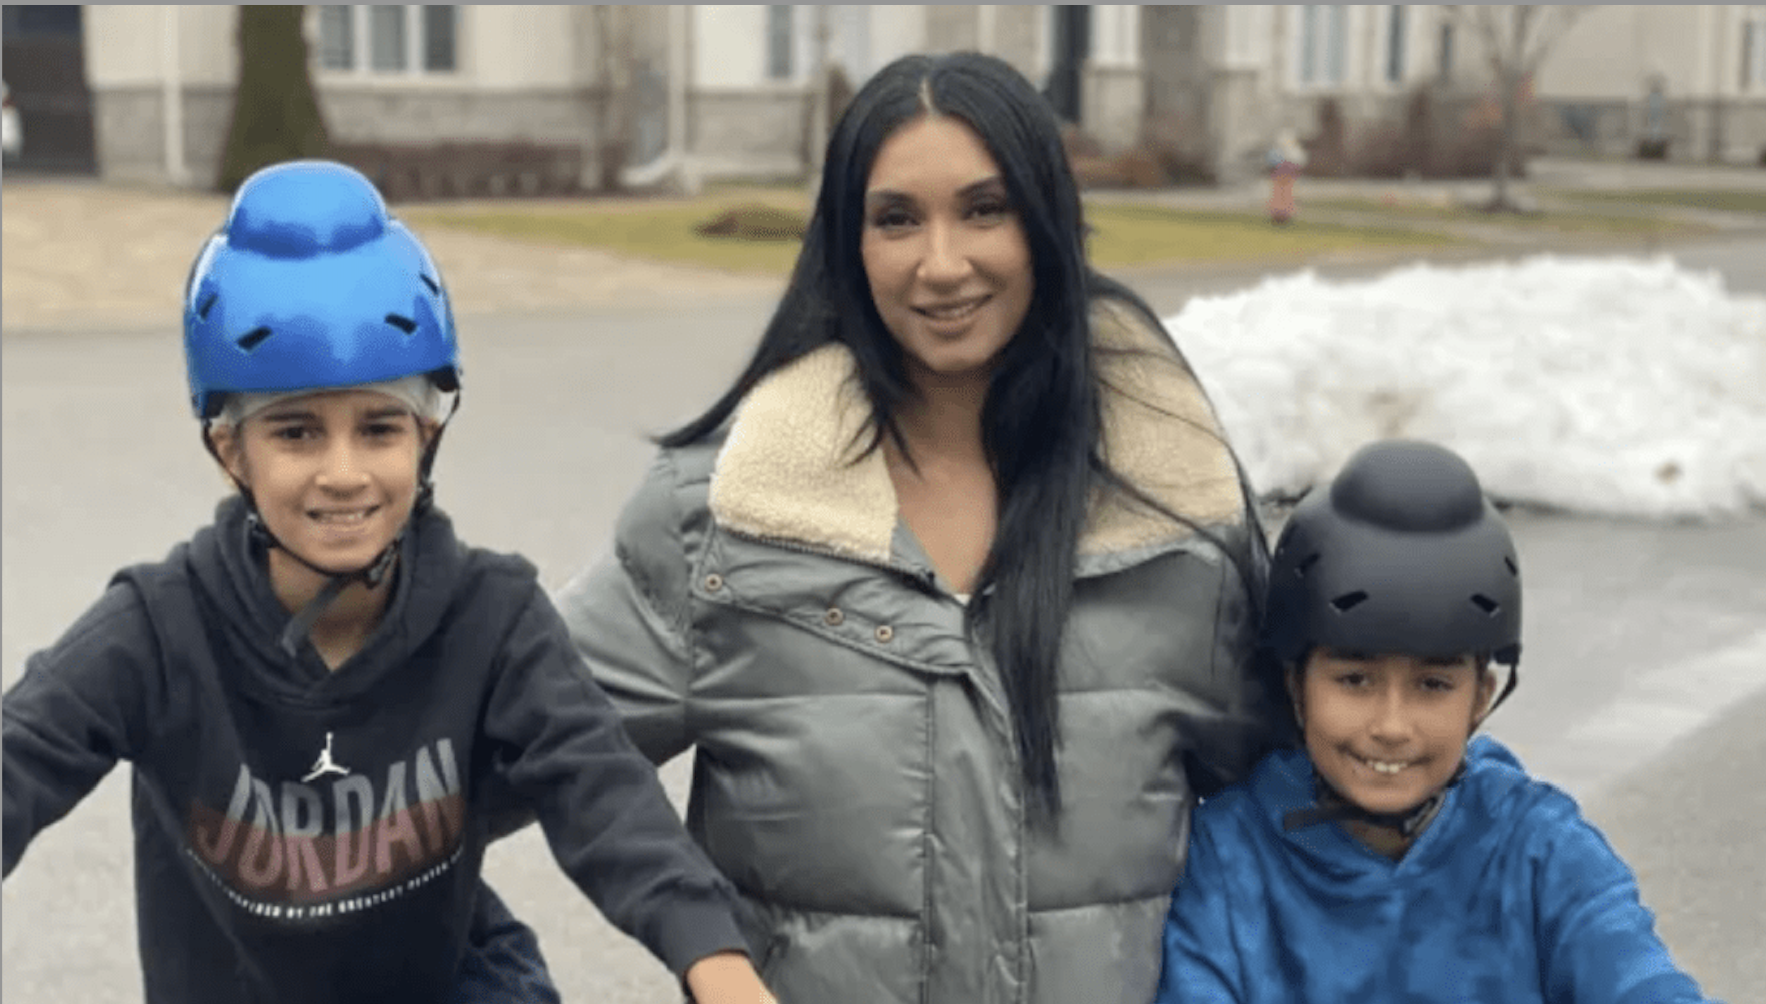 Sikh-Canadian Mom Designs “Gutta” Helmet For Her Sons